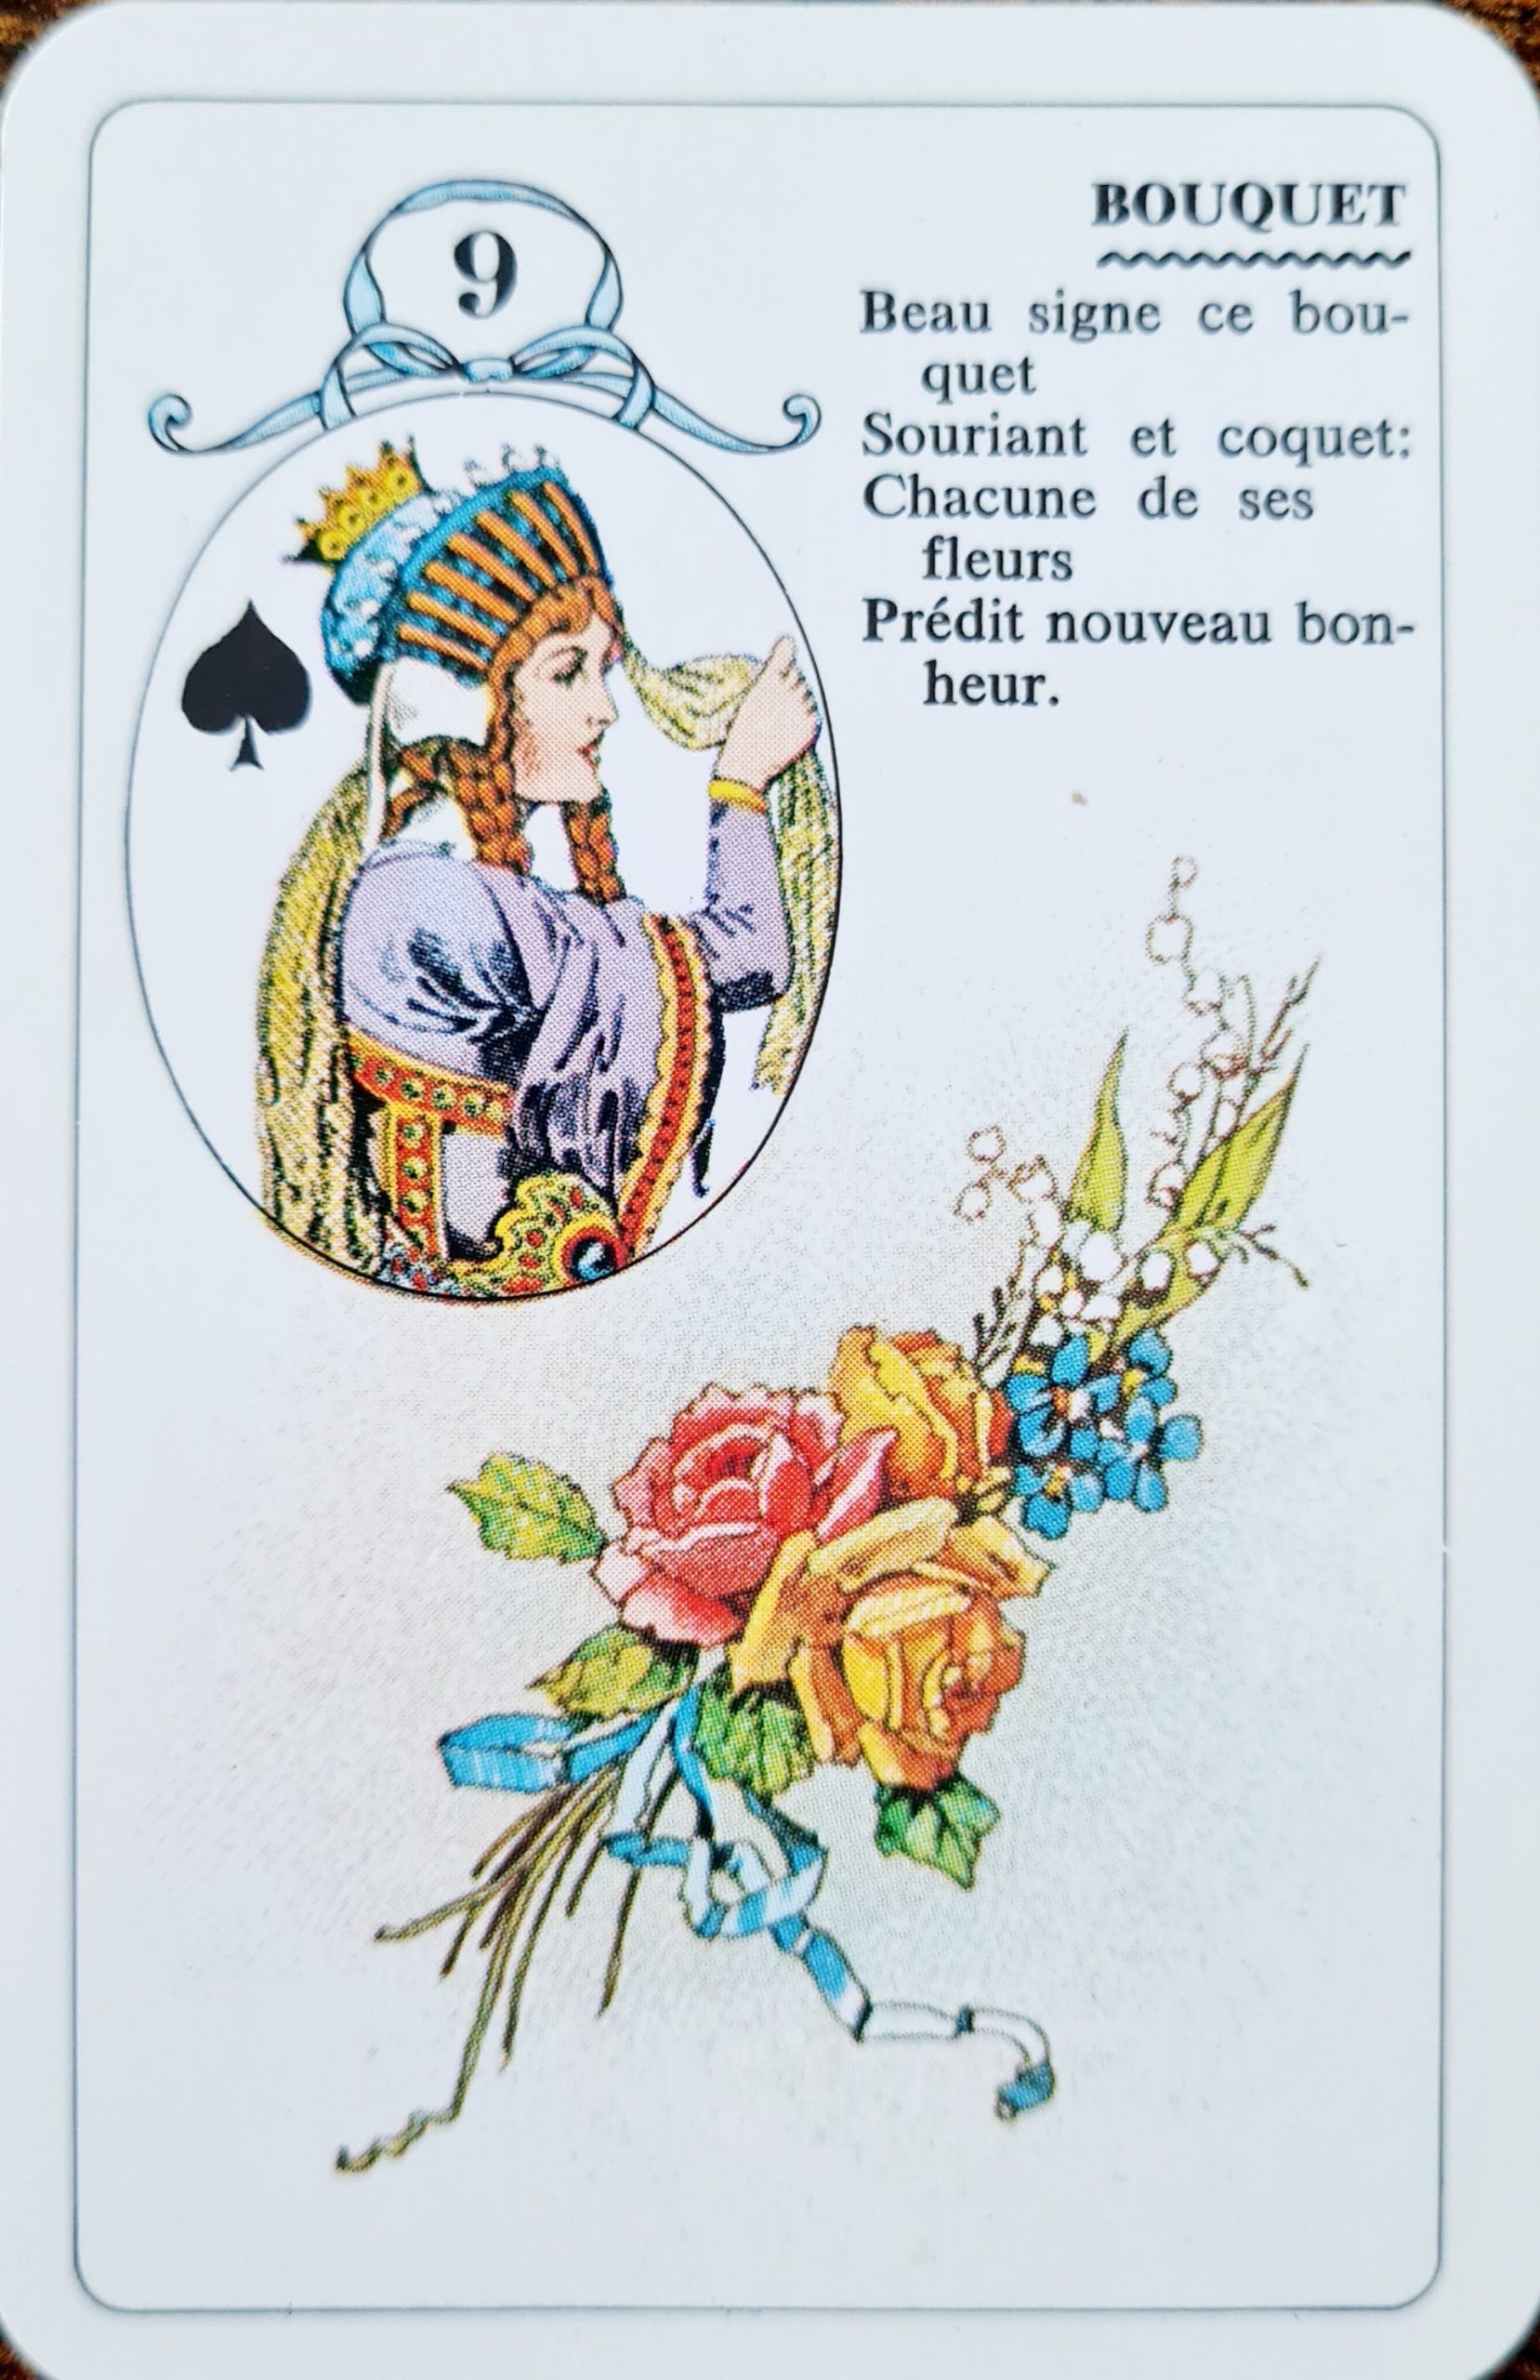 Le Petit Lenormand : signification et interprétation complète de la carte 9 : Bouquet